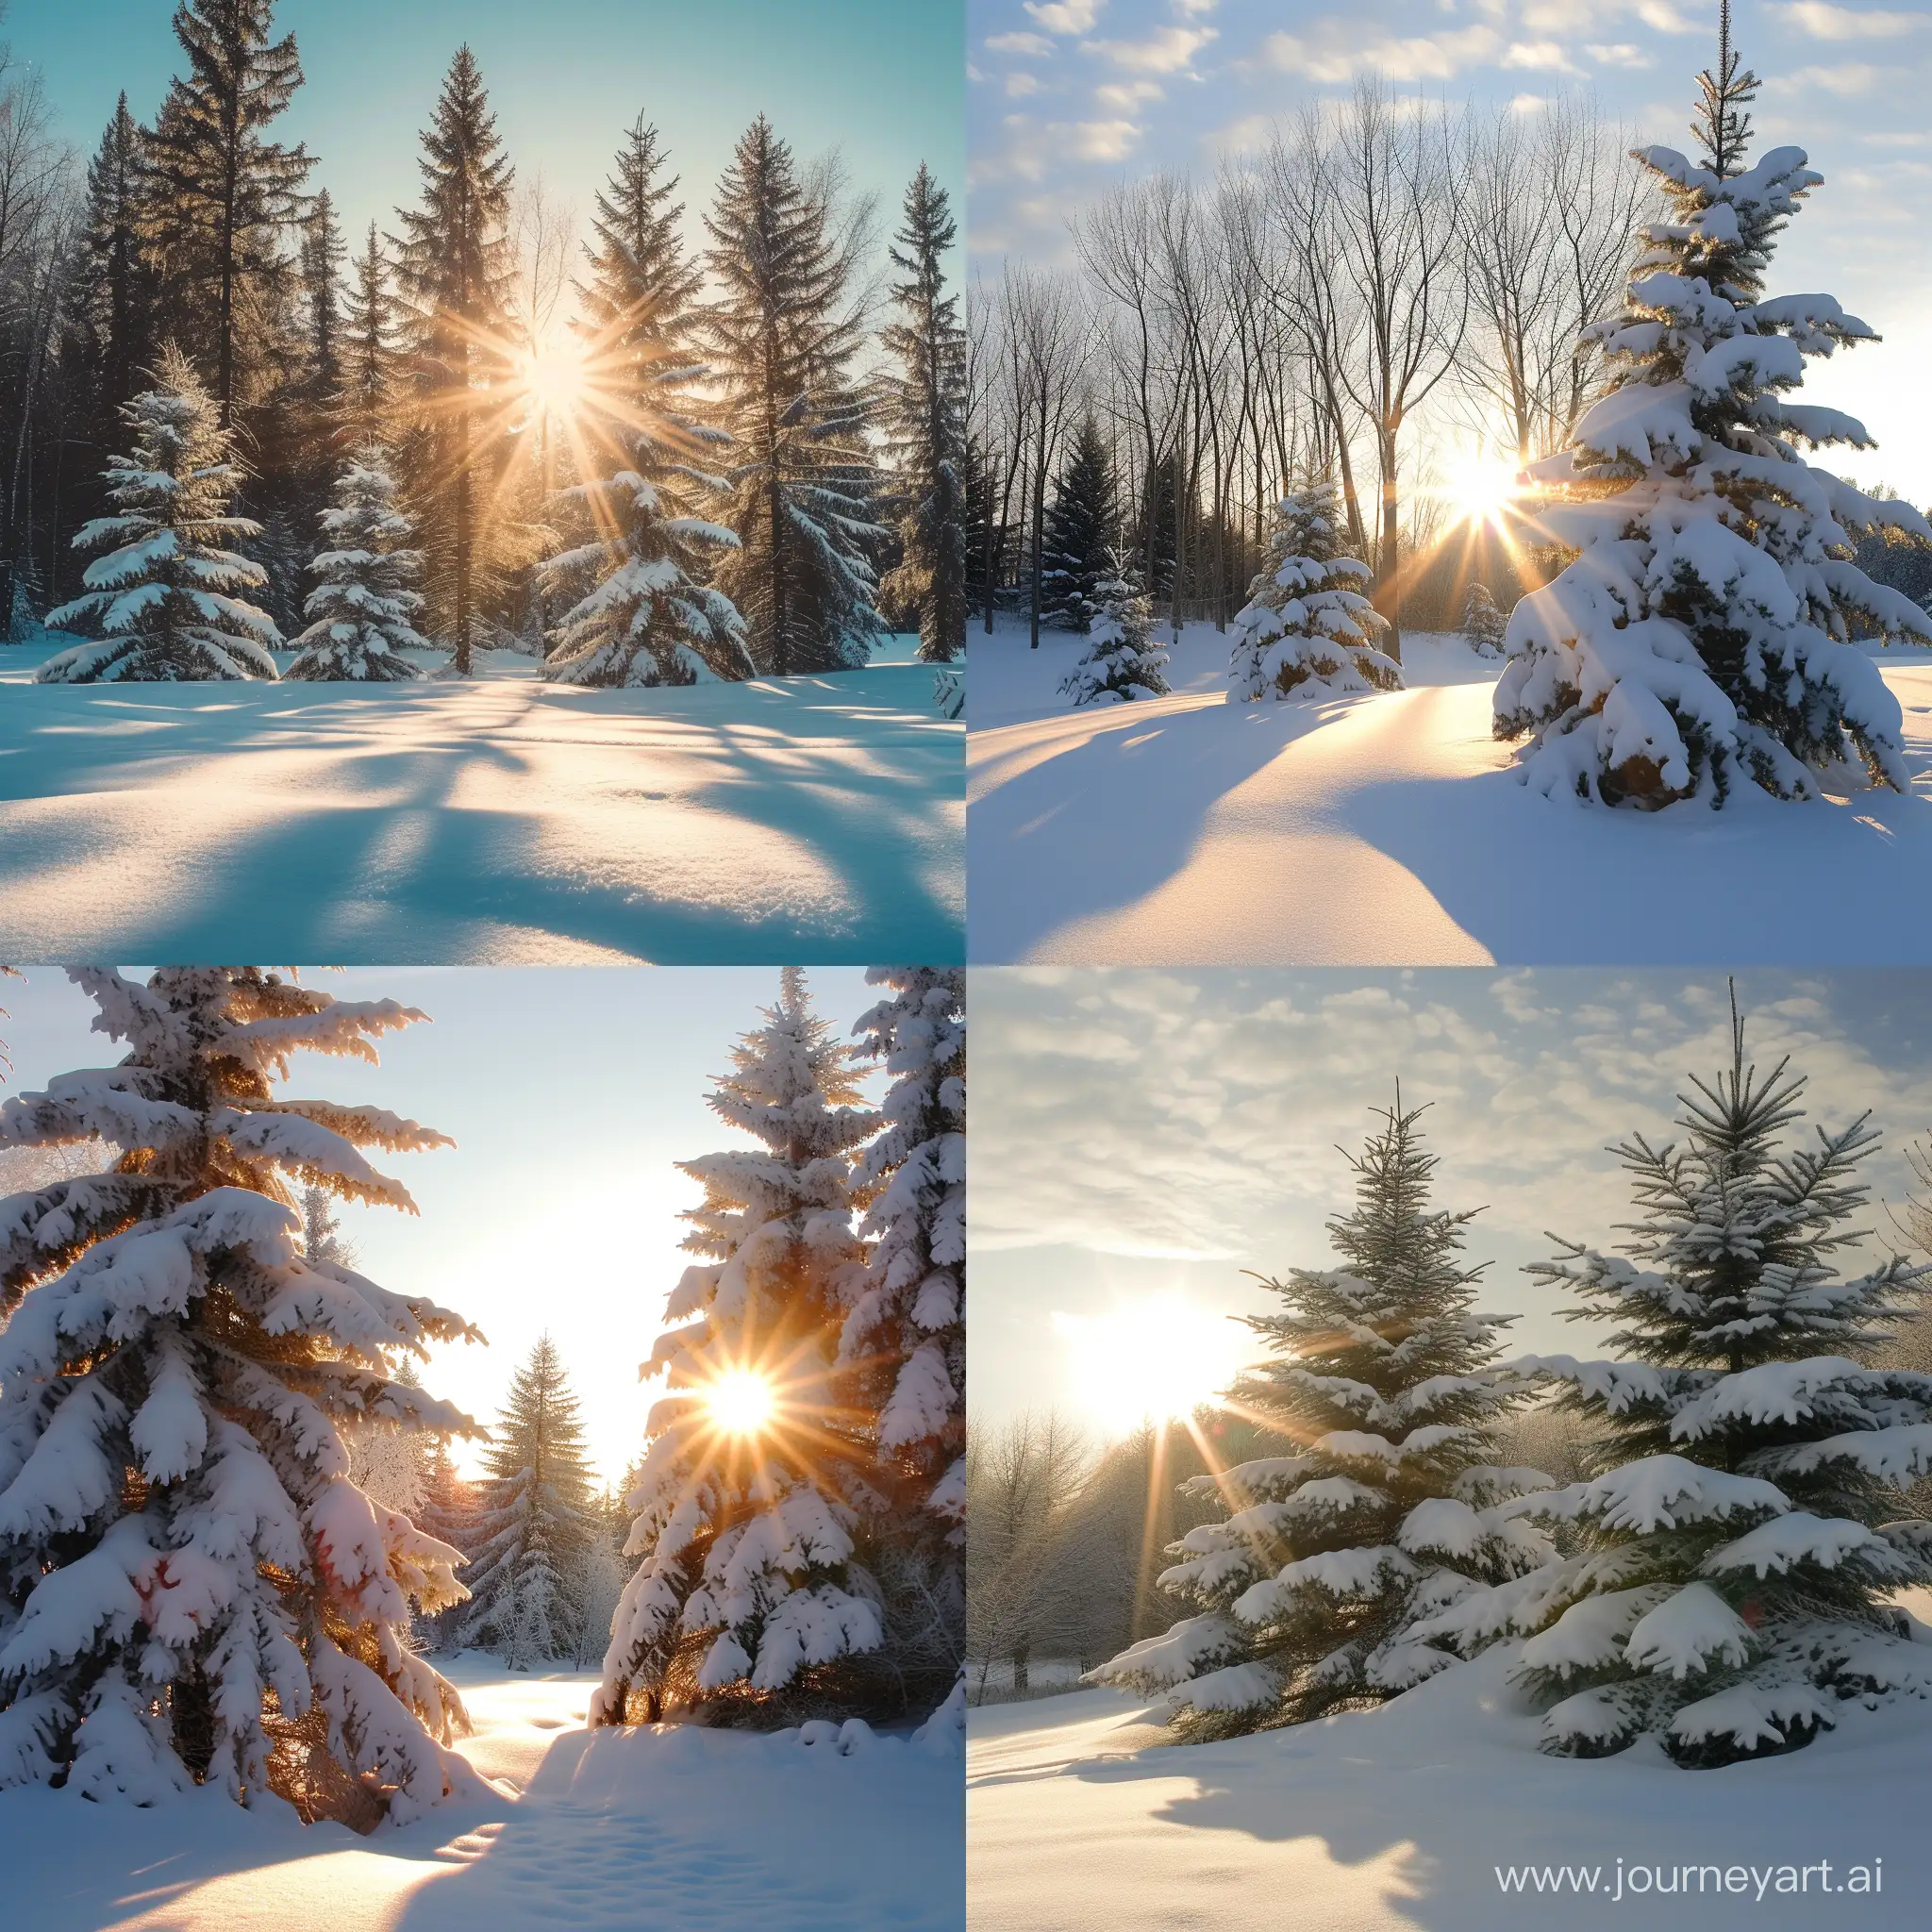  Рождество, солнце, зима, деревья в снегу